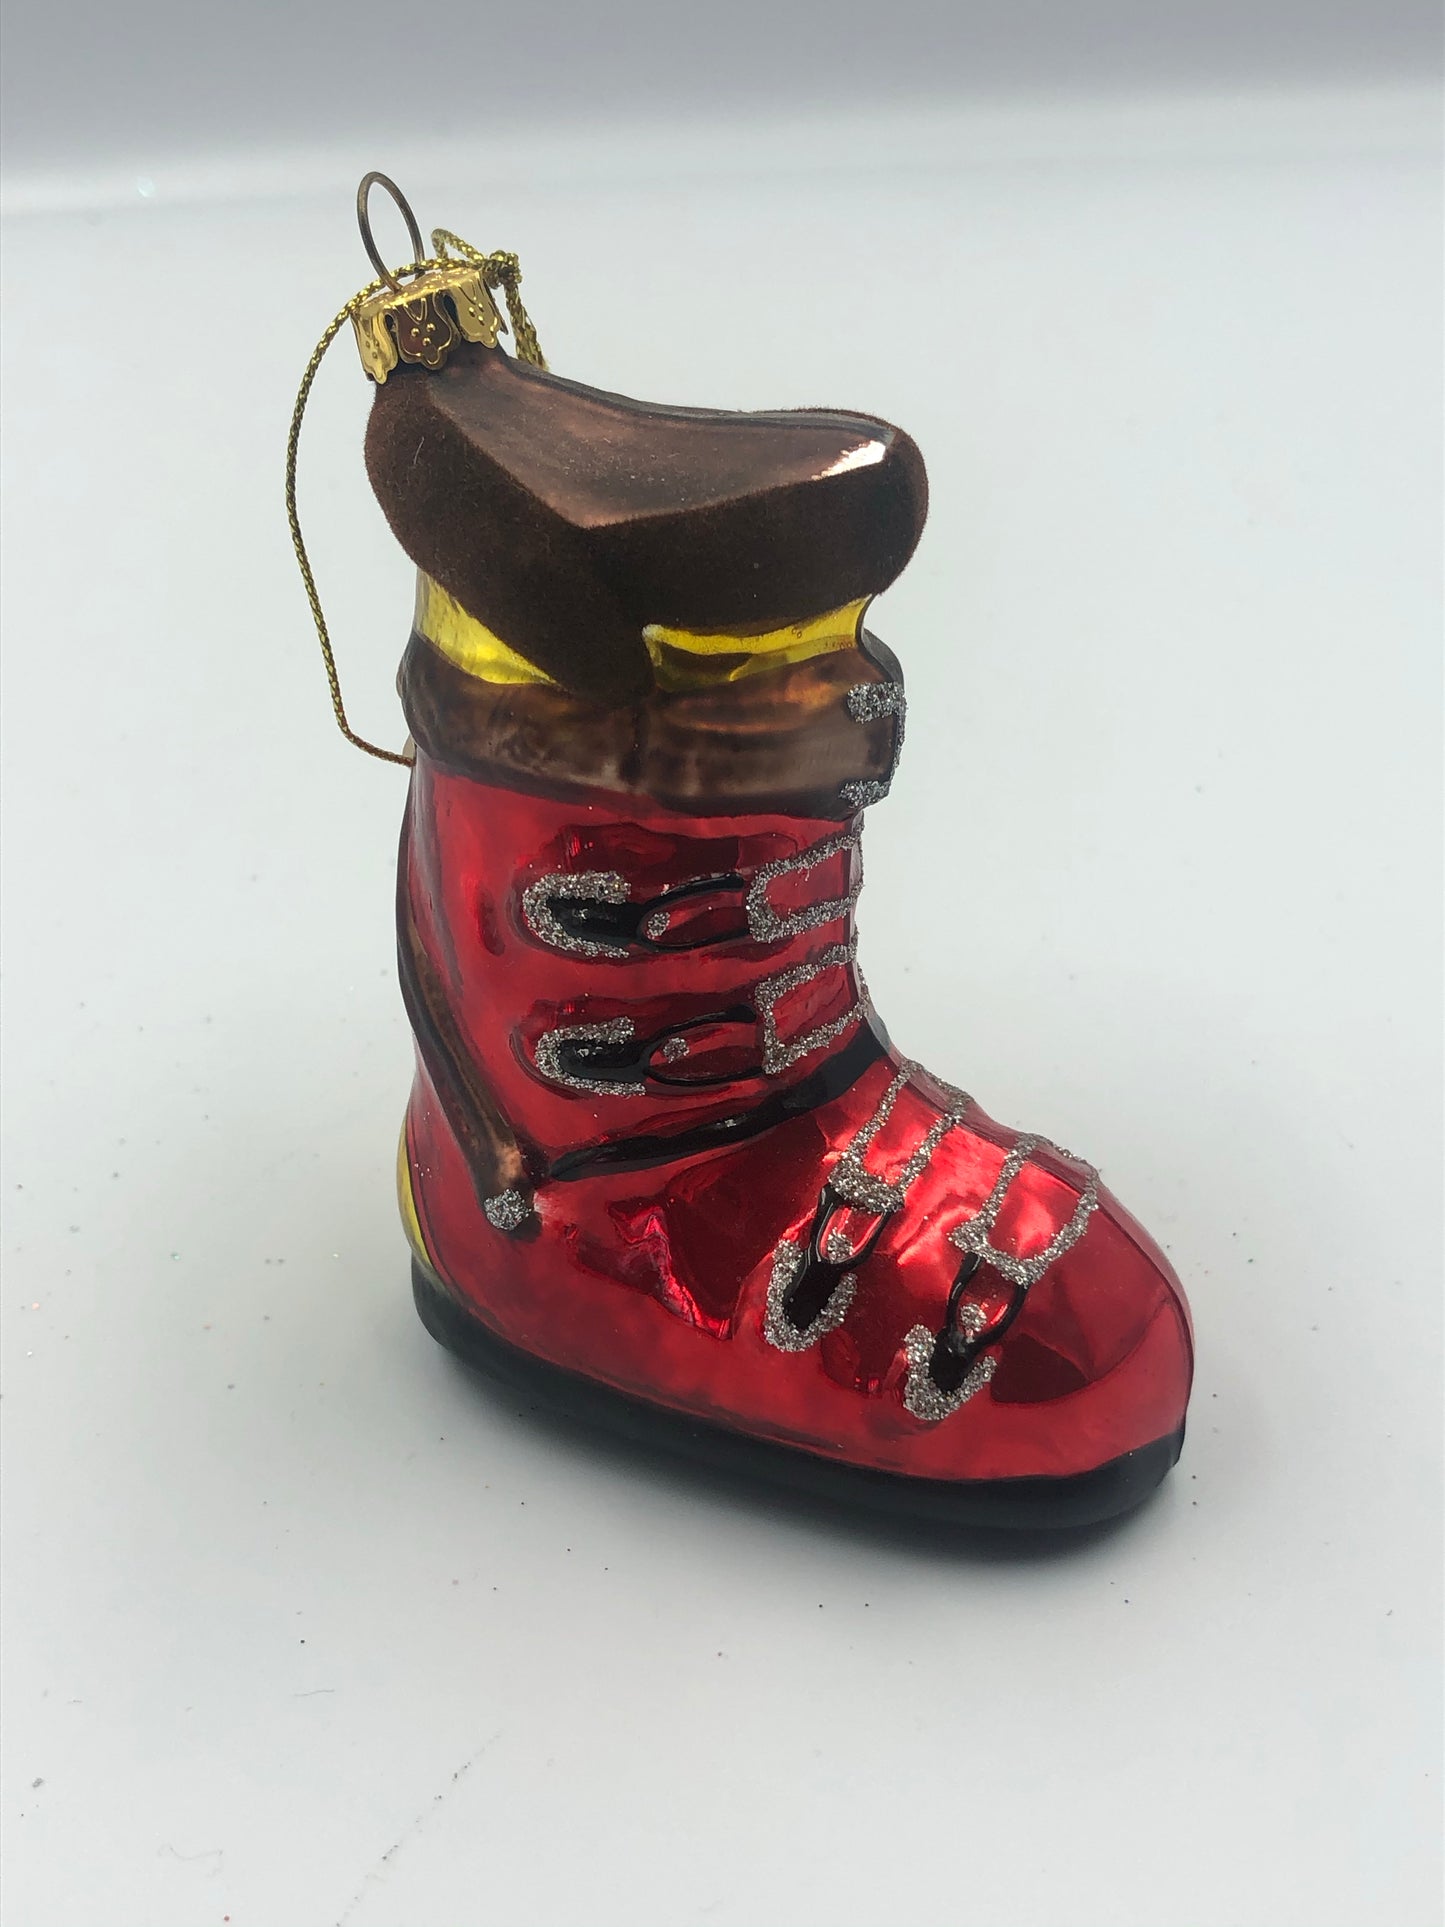 Ski Boot Ornament